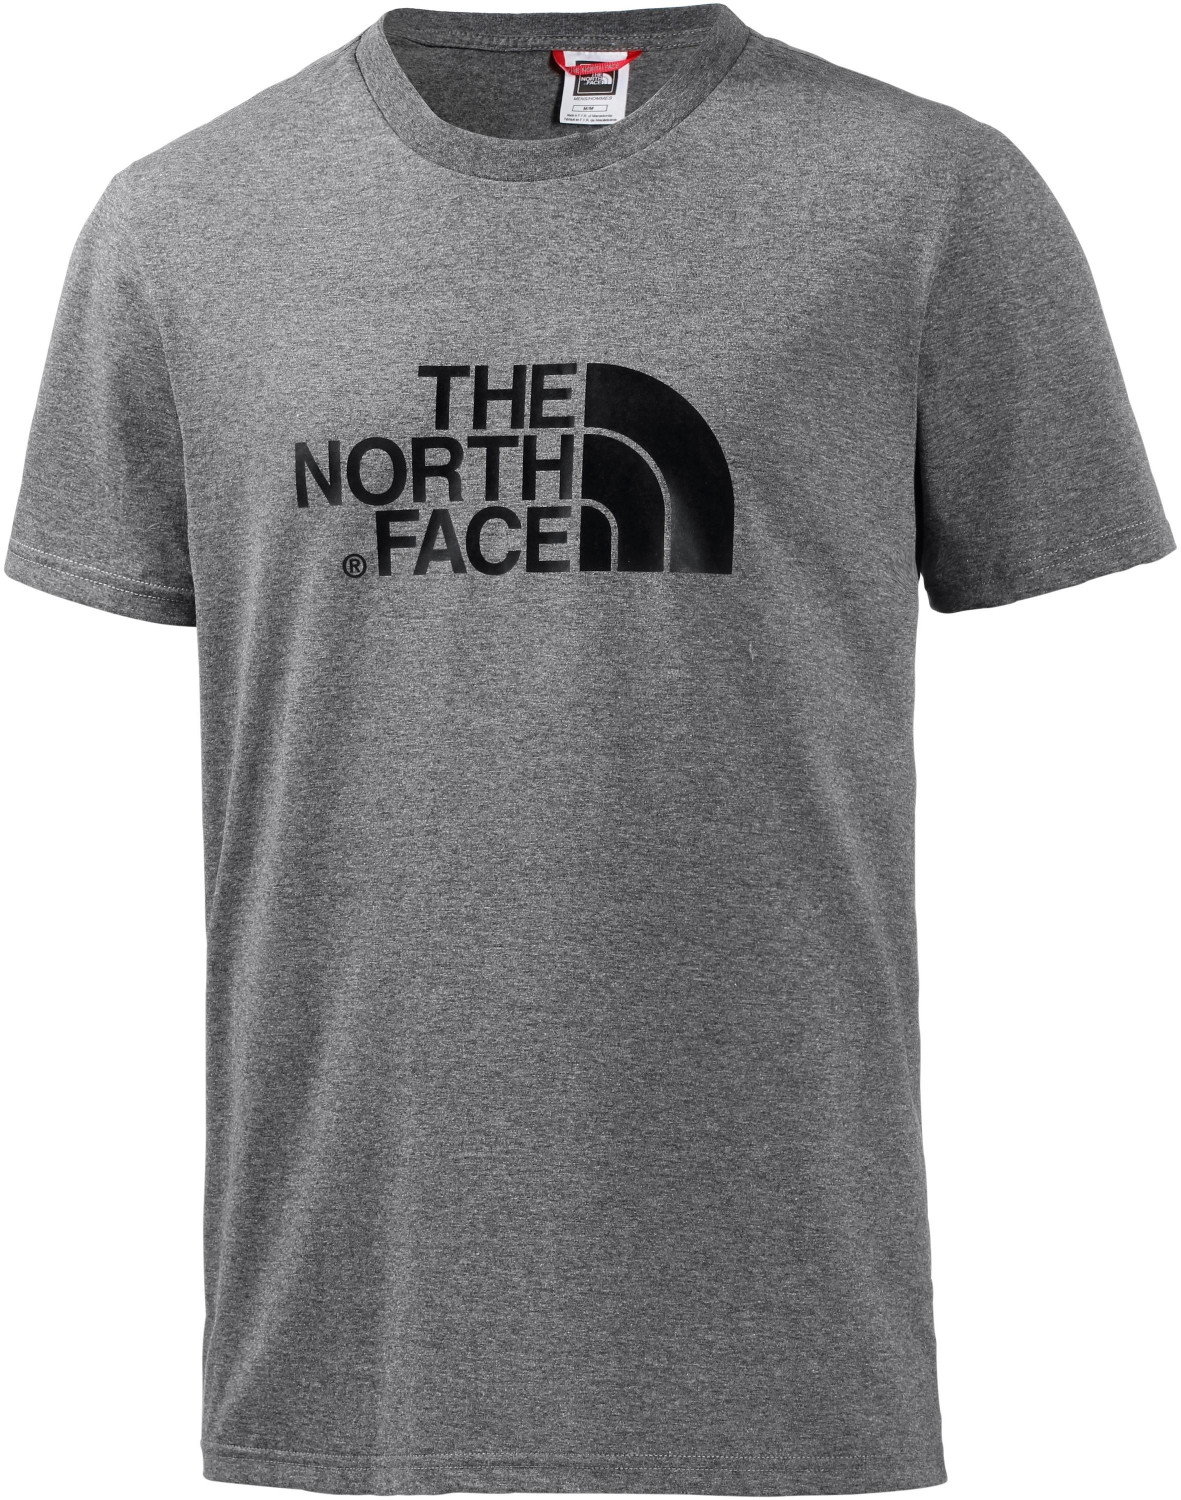 Футболка оригинал авито. The North face футболка оригинал. Футболка the North face хаки. Футболка the North face t92tx5ber. Тнф майка оригинал.